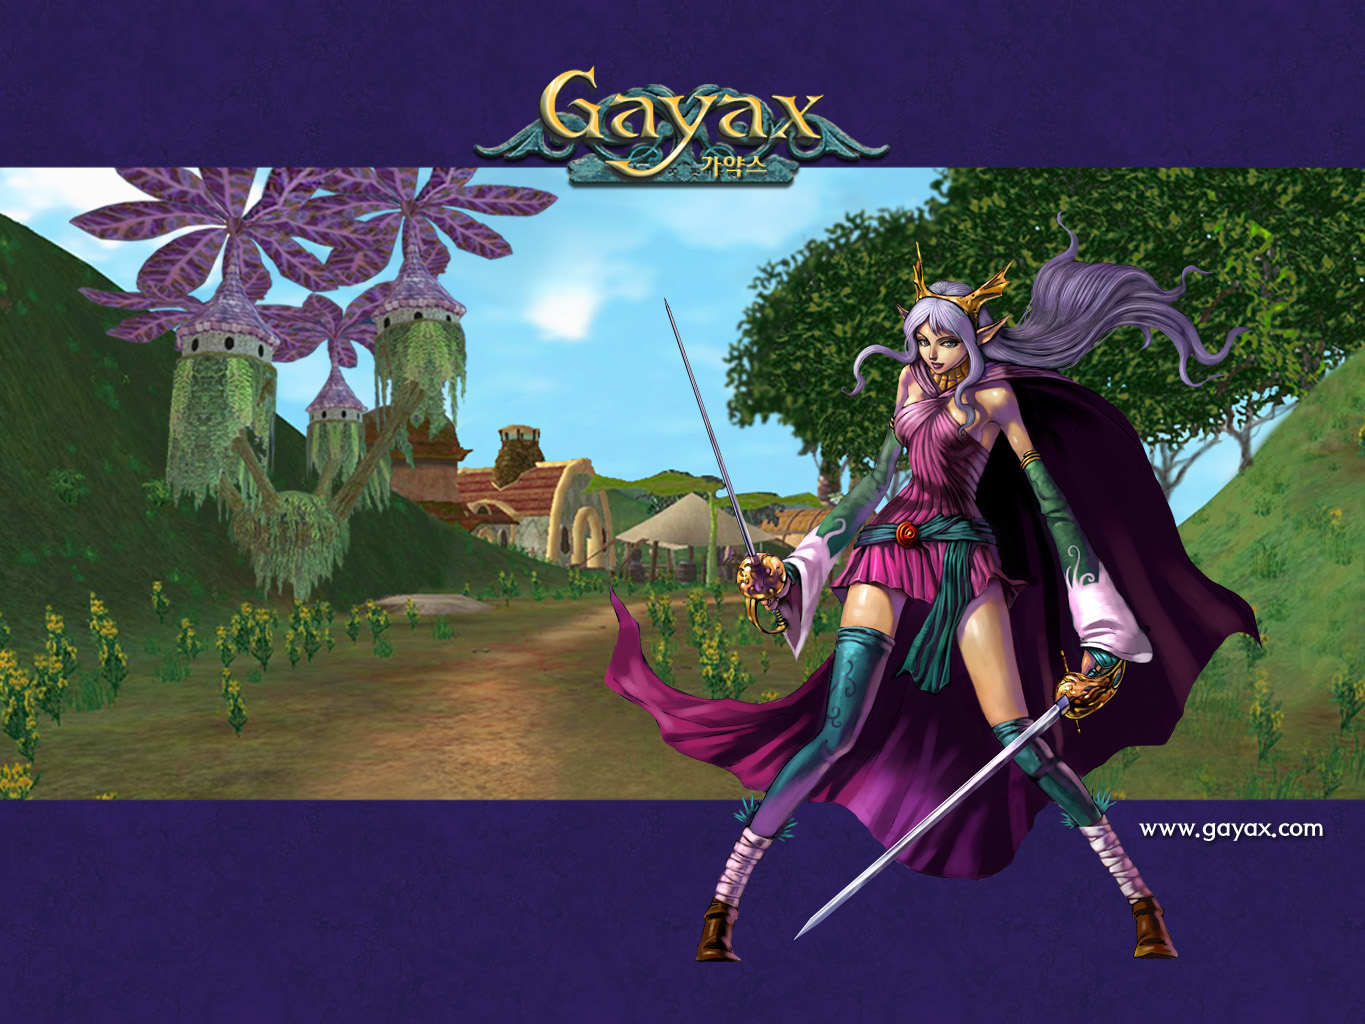 Gayax HD wallpapers, Desktop wallpaper - most viewed